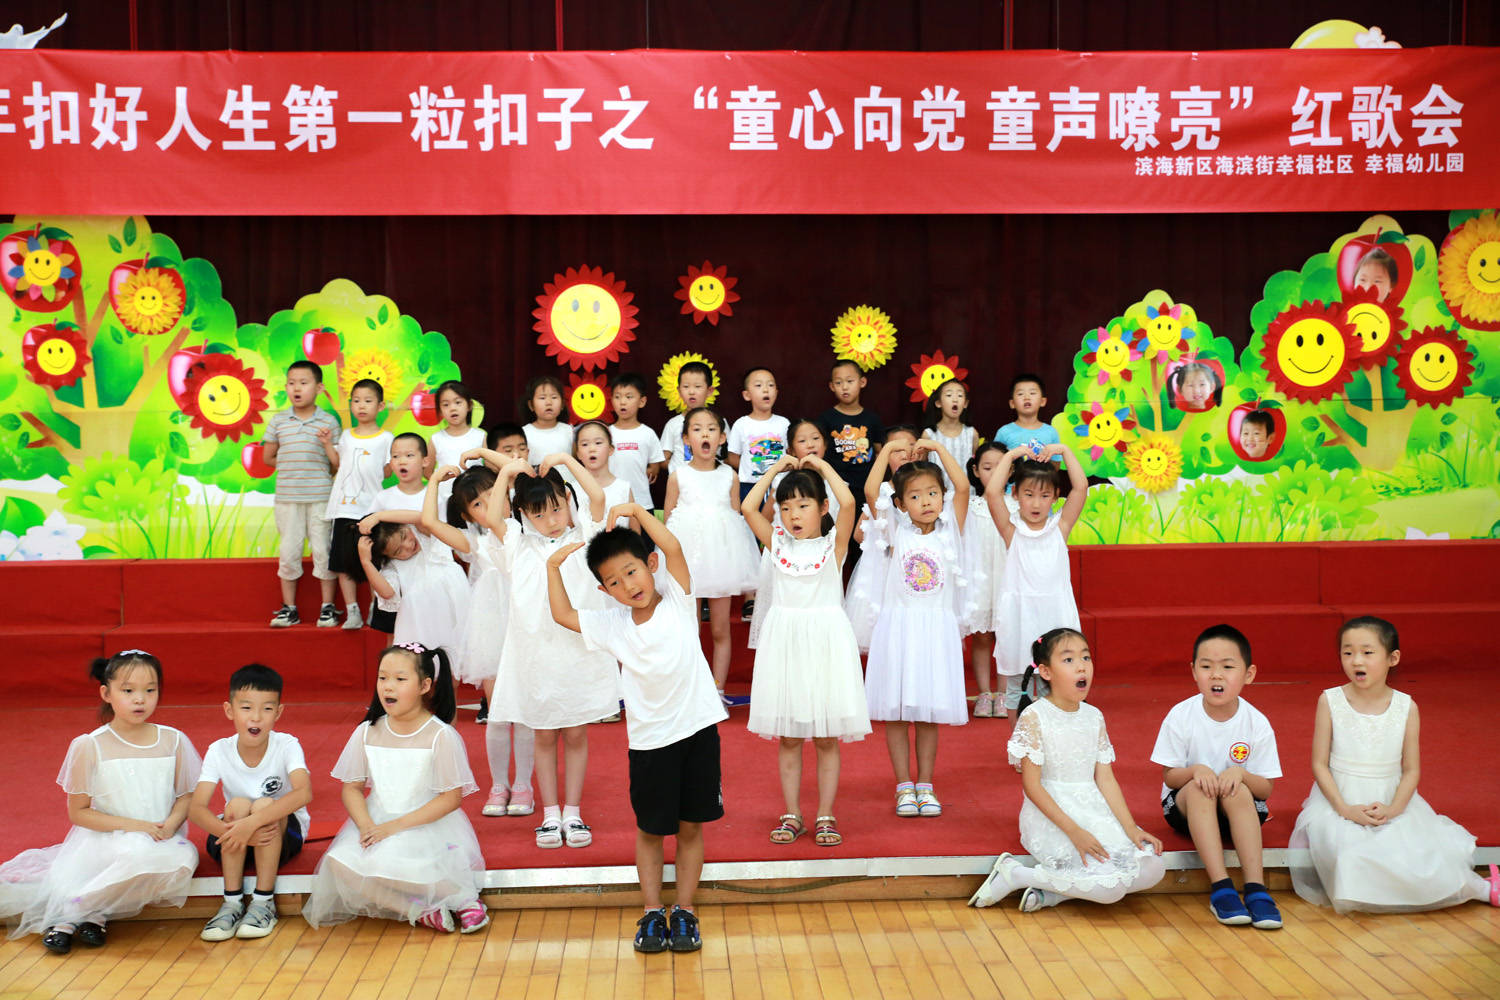 天津滨海:八一前夕幸福幼儿园传出嘹亮童声